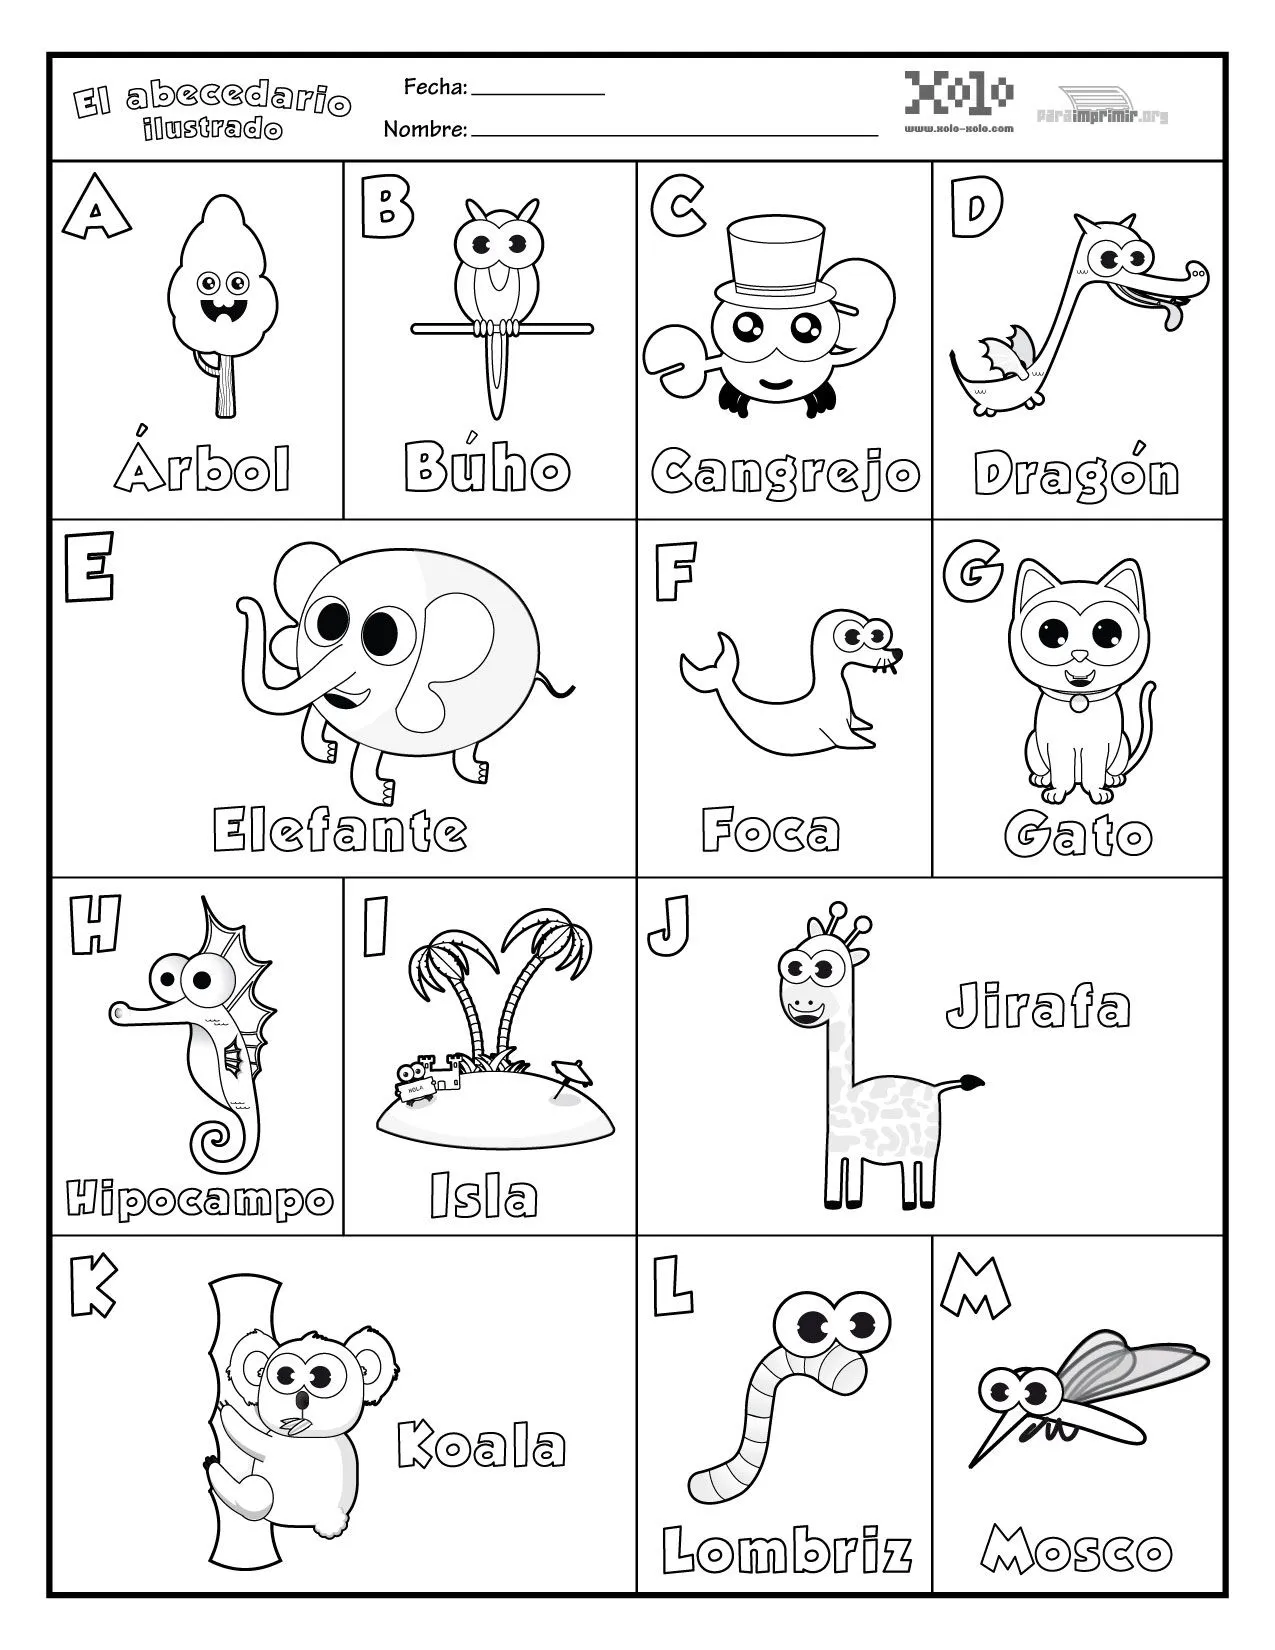 El alfabeto en inglés para colorear - Imagui